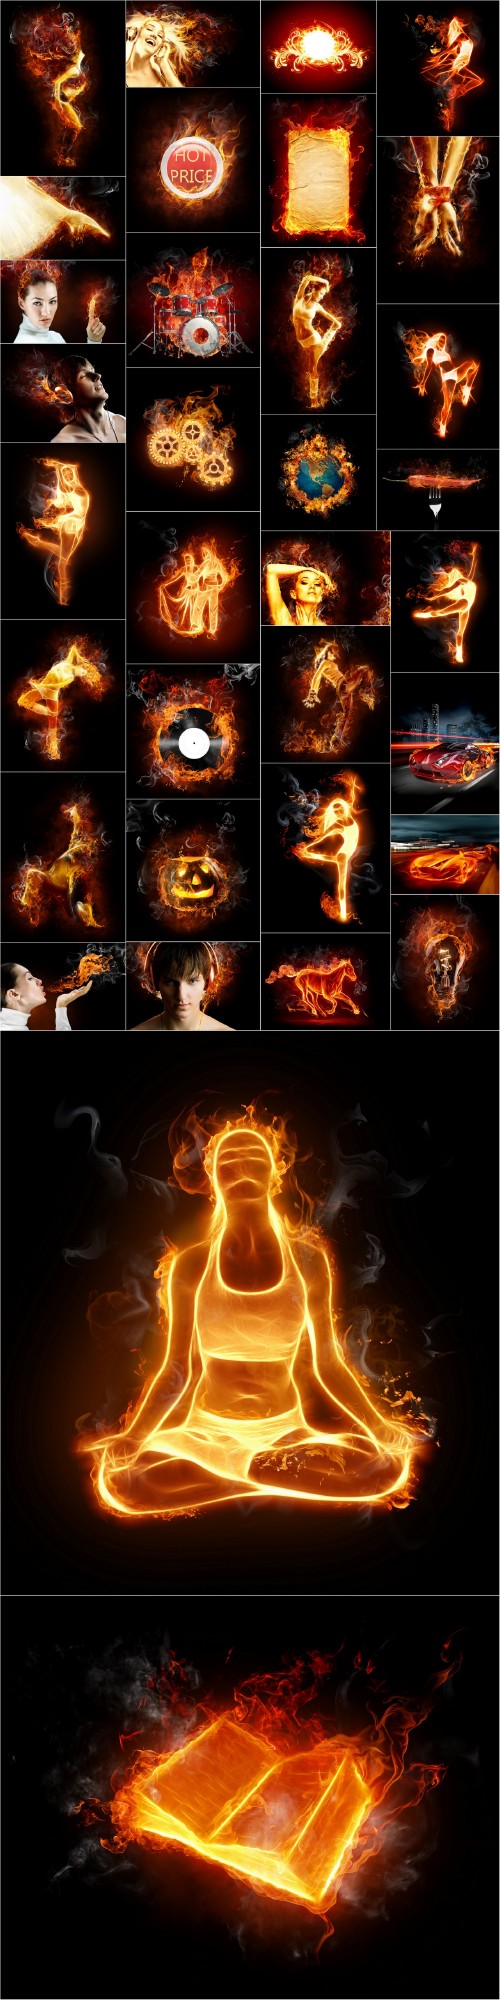 Stock Photos - Flames